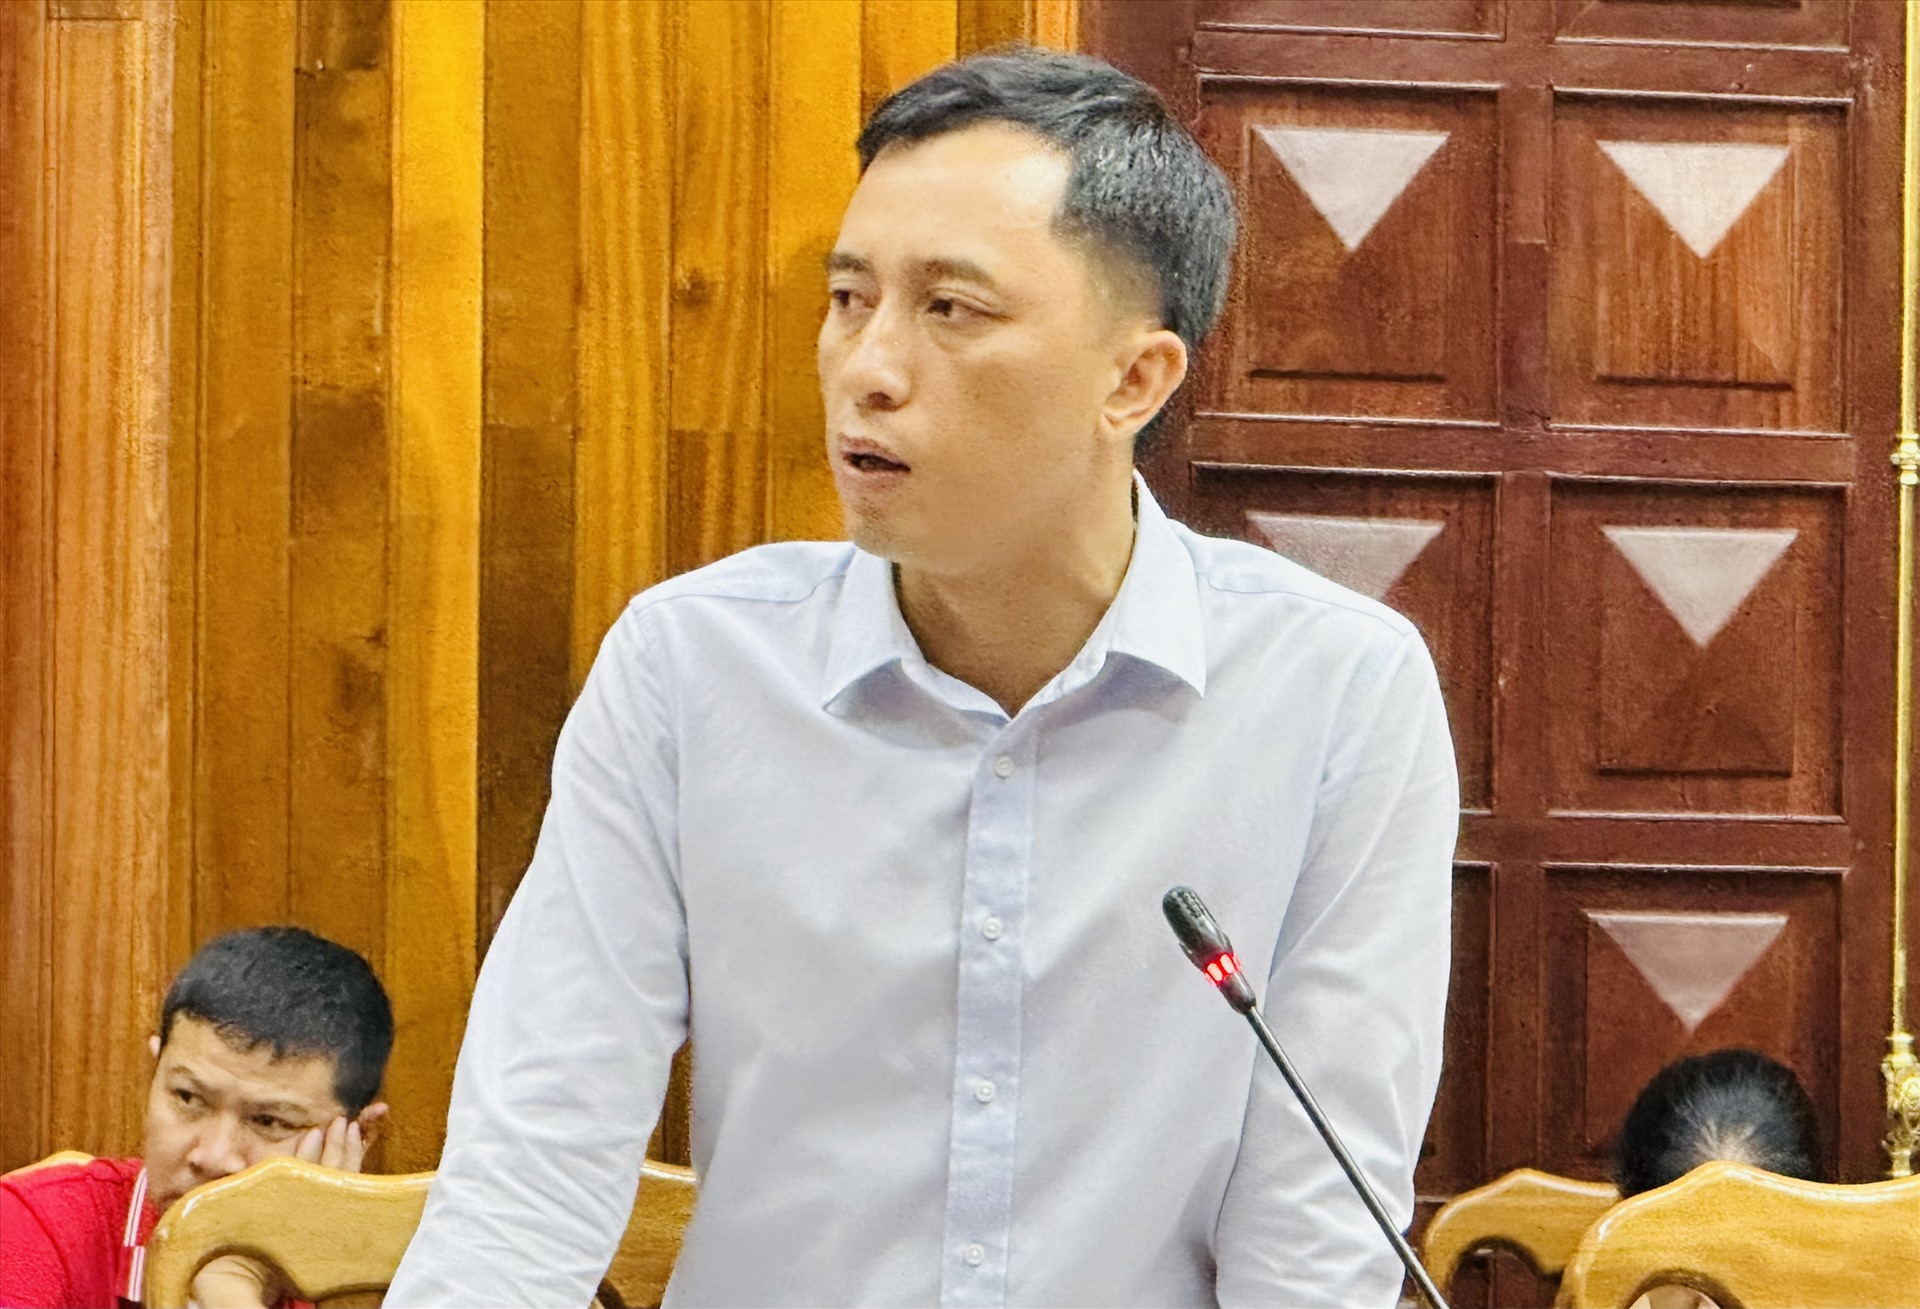 Ông Trần Hoài Nam - Phó GĐ Sở NNPTNT tỉnh Quảng Bình tại buổi họp báo. Ảnh: Lê Phi Long